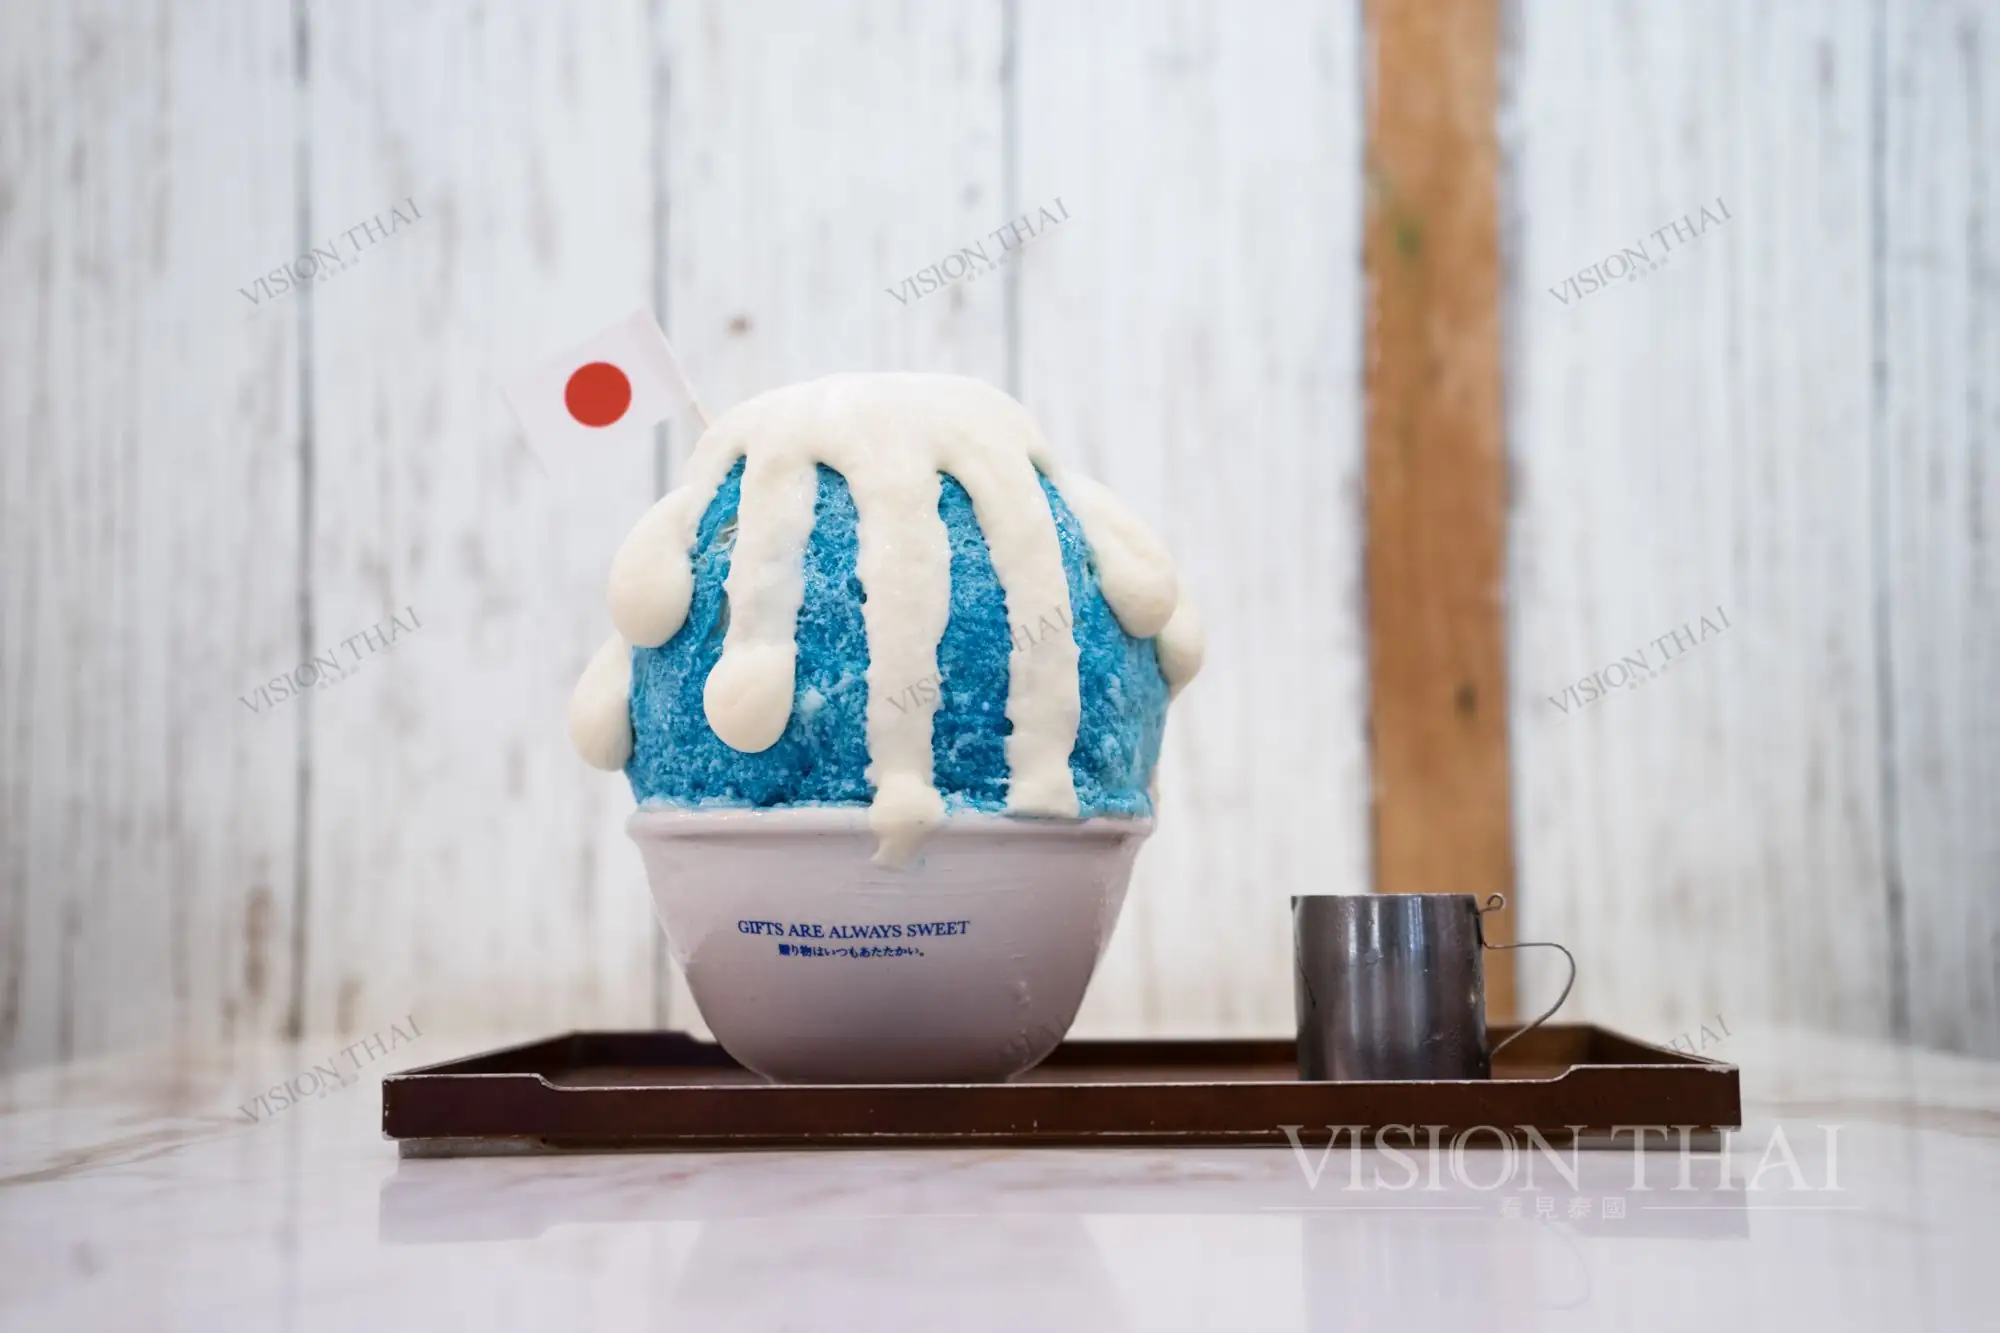 日式甜点店White Day Patisserie以富士山为冰品造型（VISION THAI 看见泰国）